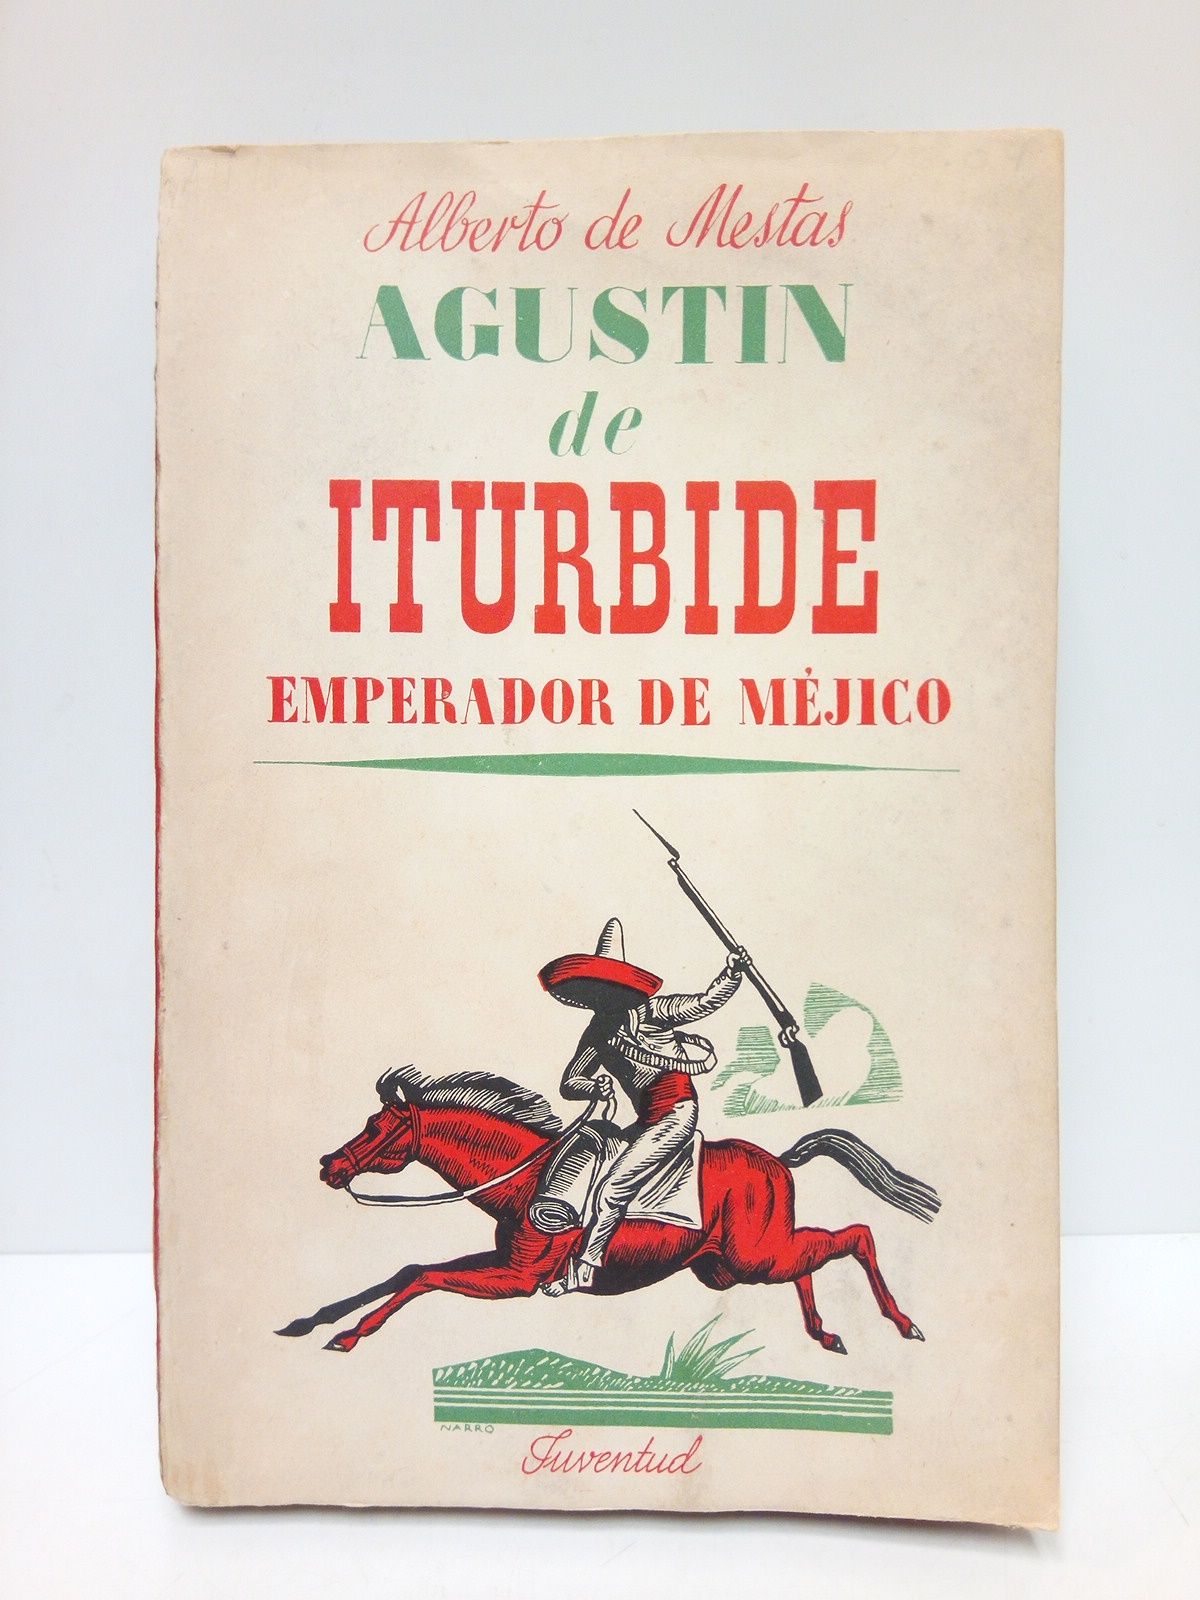 MESTAS, Alberto de - Agustn de Iturbide: Emperador de Mjico